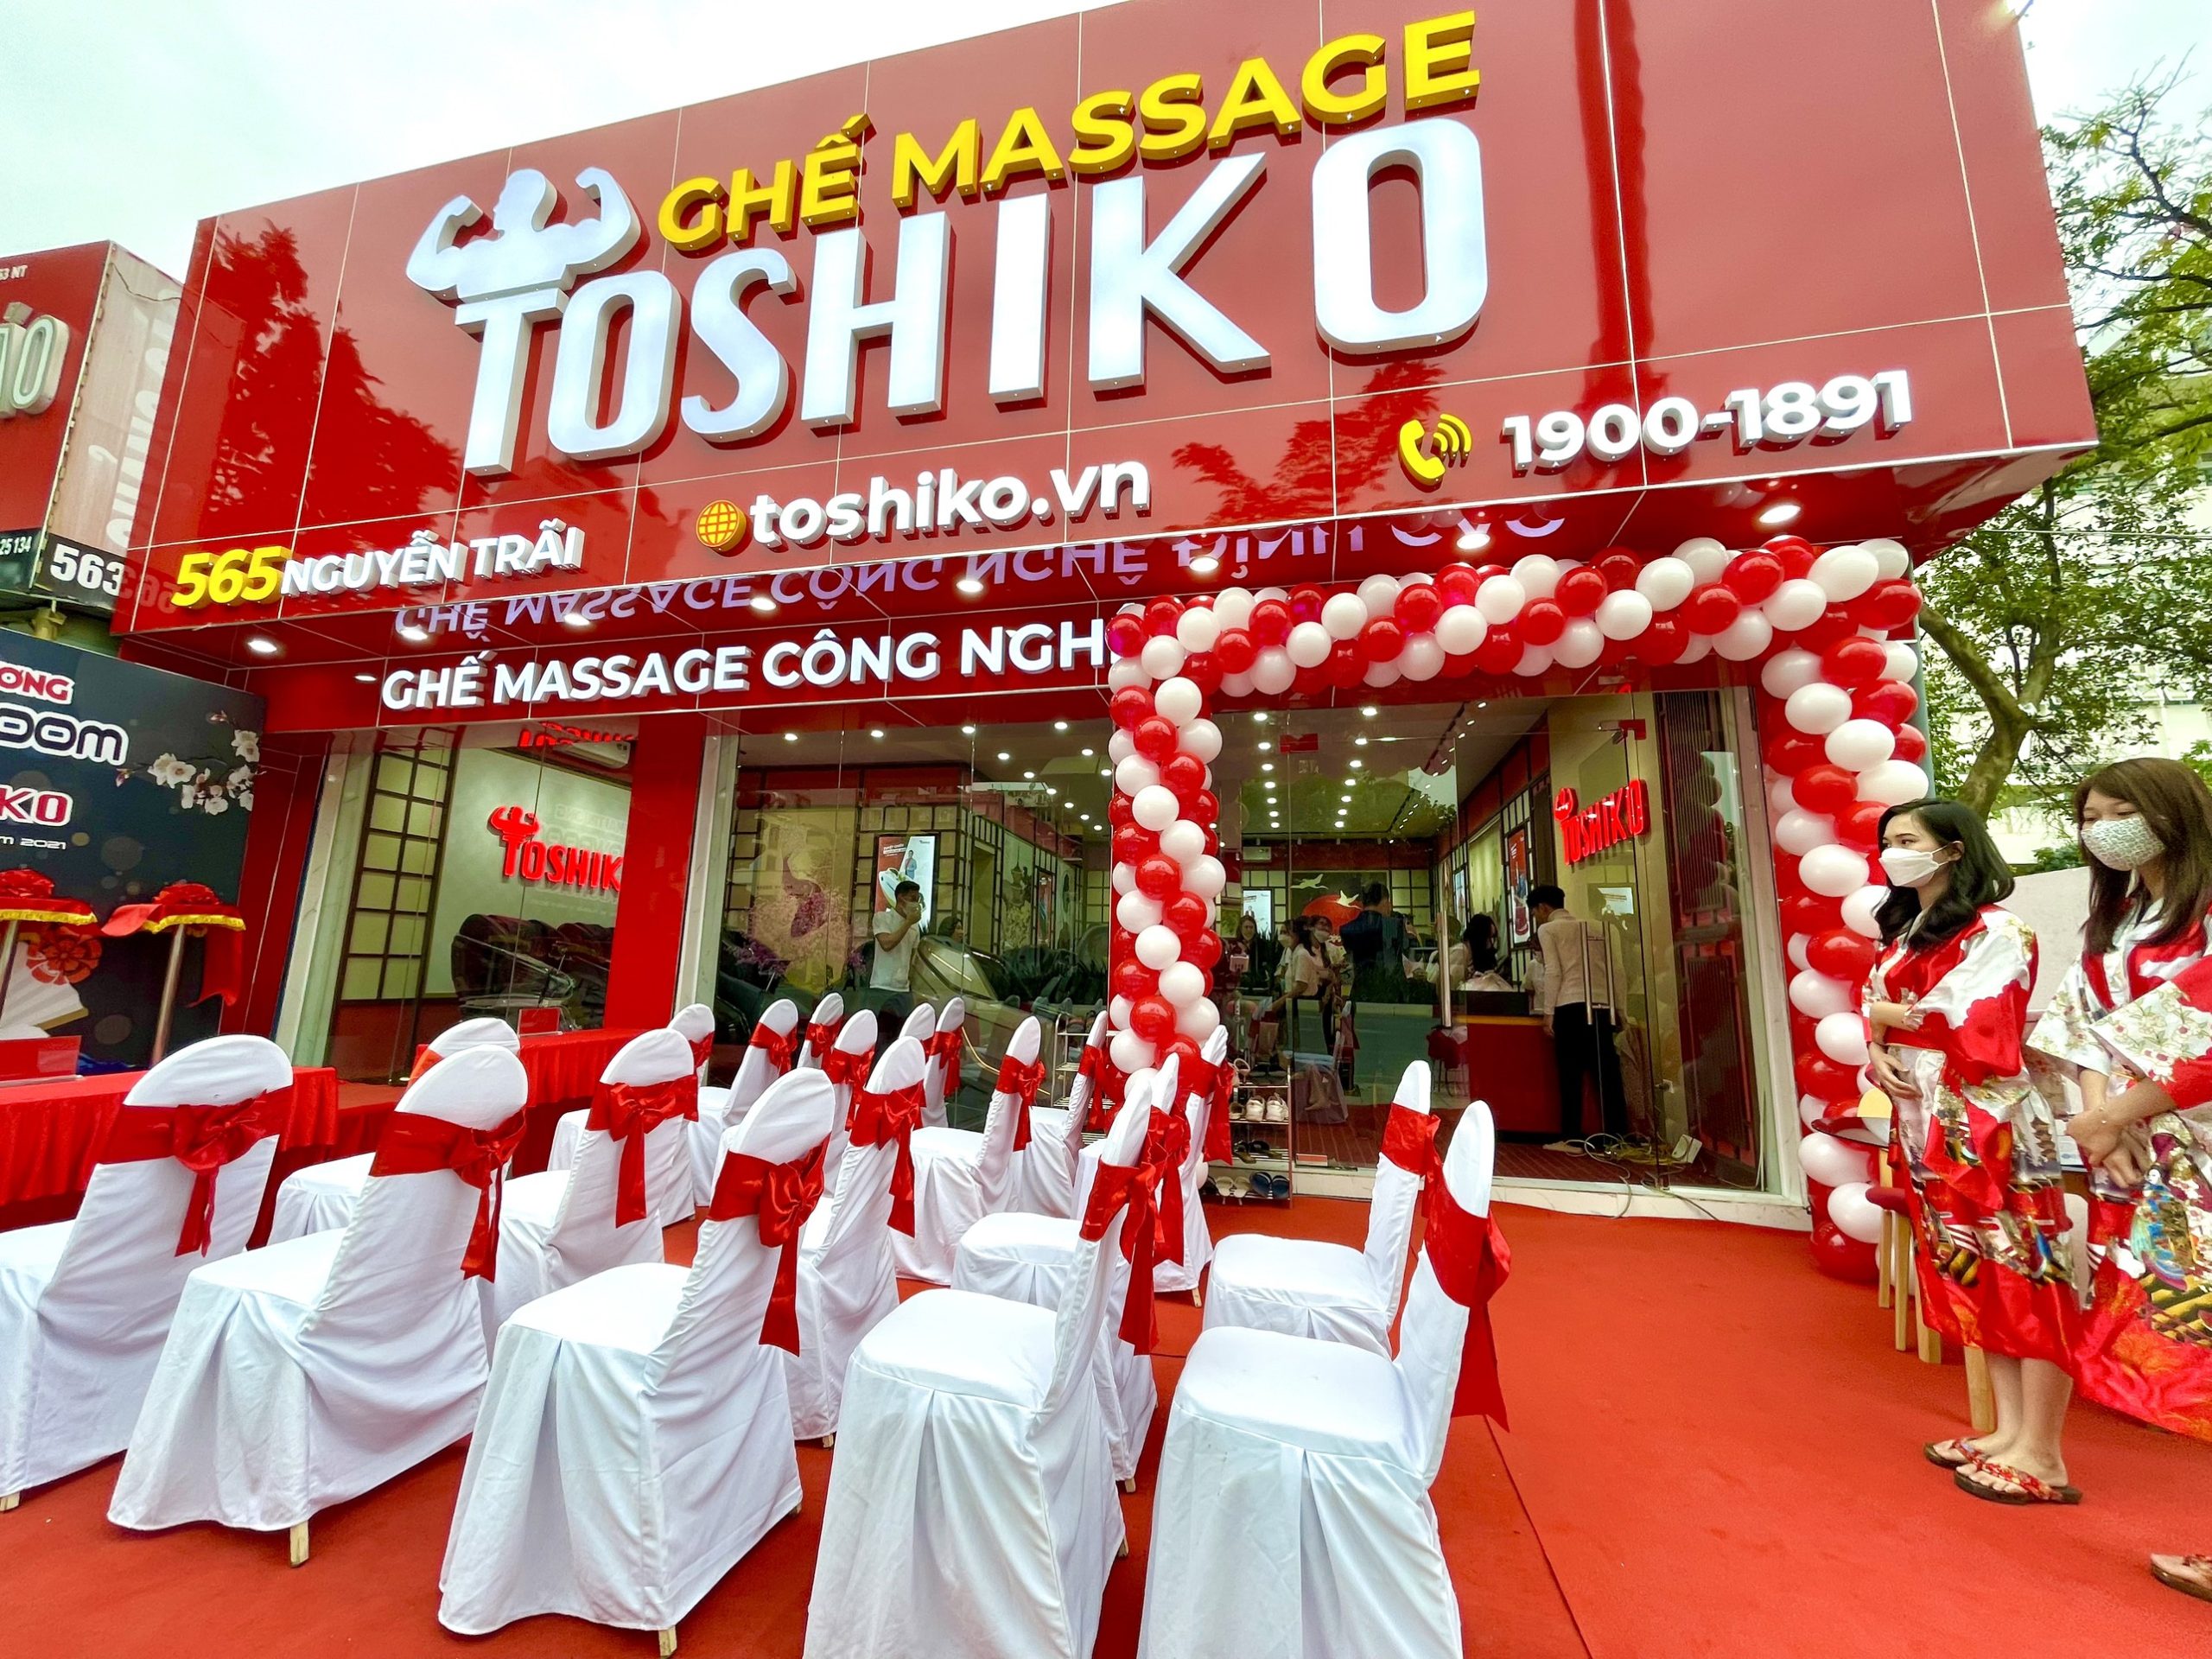 Toshiko là đơn vị uy tín phân phối ghế massage